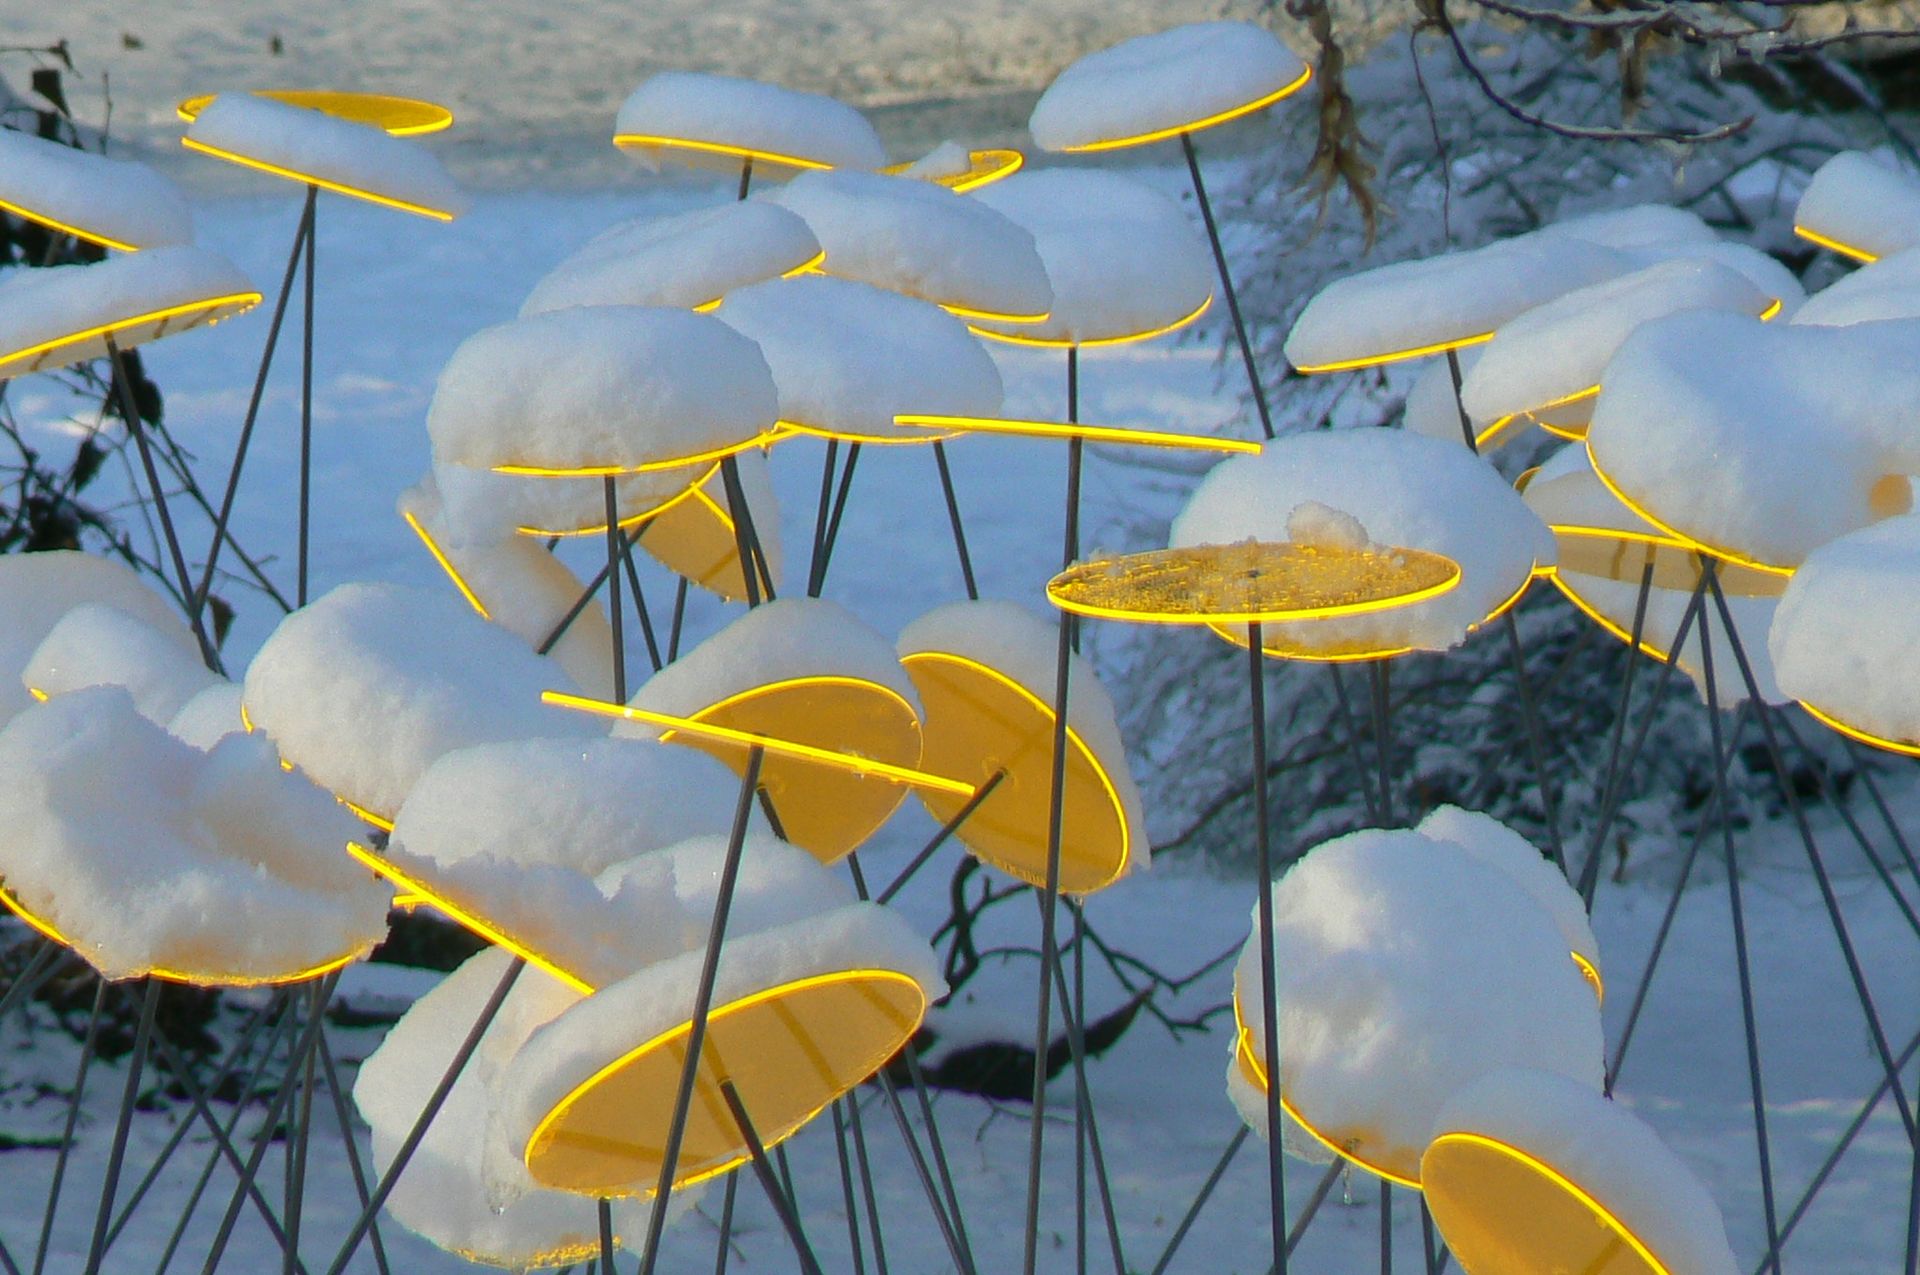 Schneehauben auf runden gelben Scheiben